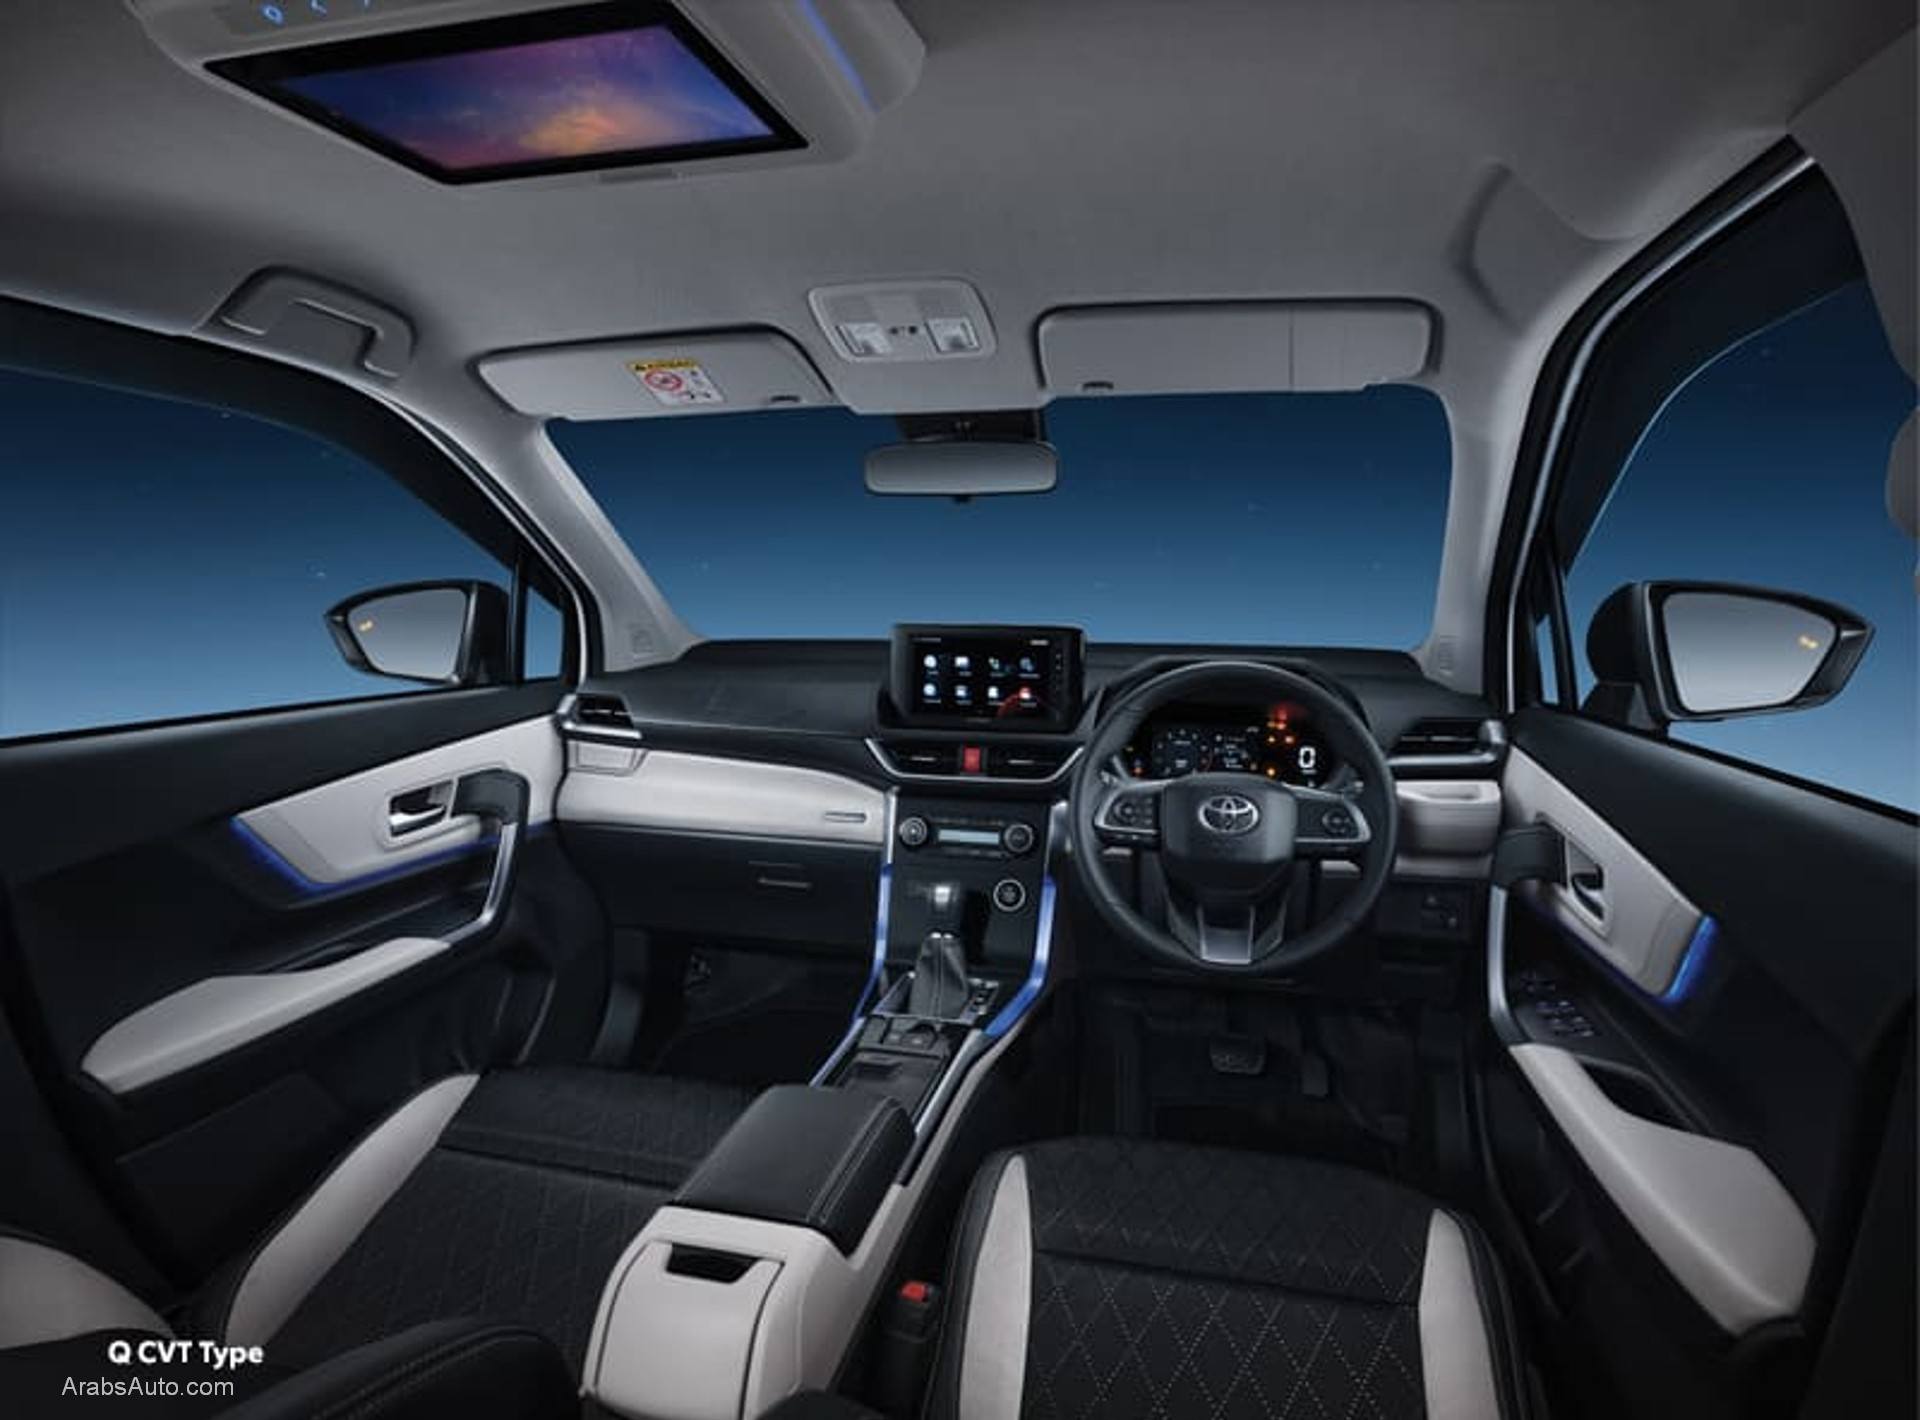 سيارة تويوتا أفانزا 2022 الاكثر توفيرا فى الوقود وأهم المواصفات والمميزات الرائعه بالسيارة